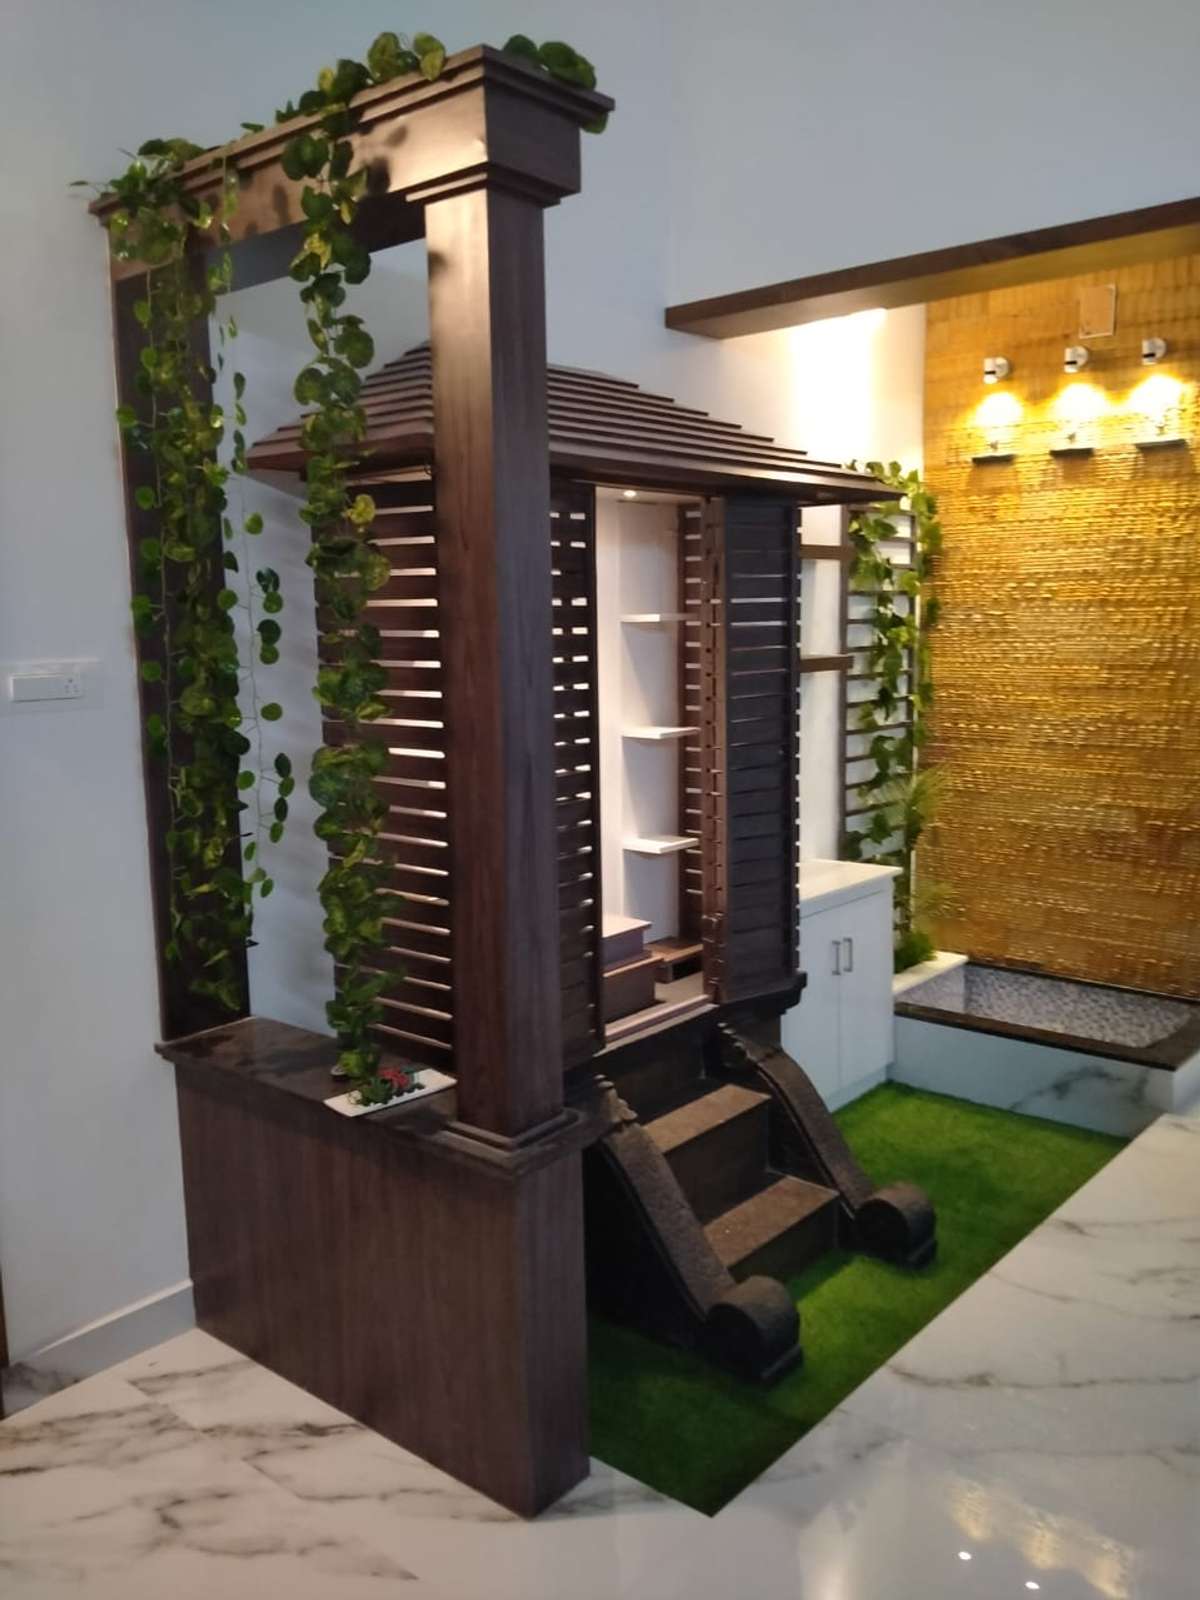 
pooja roomðŸŒ¹
wood work
arun group ðŸŒ¹
home interior 